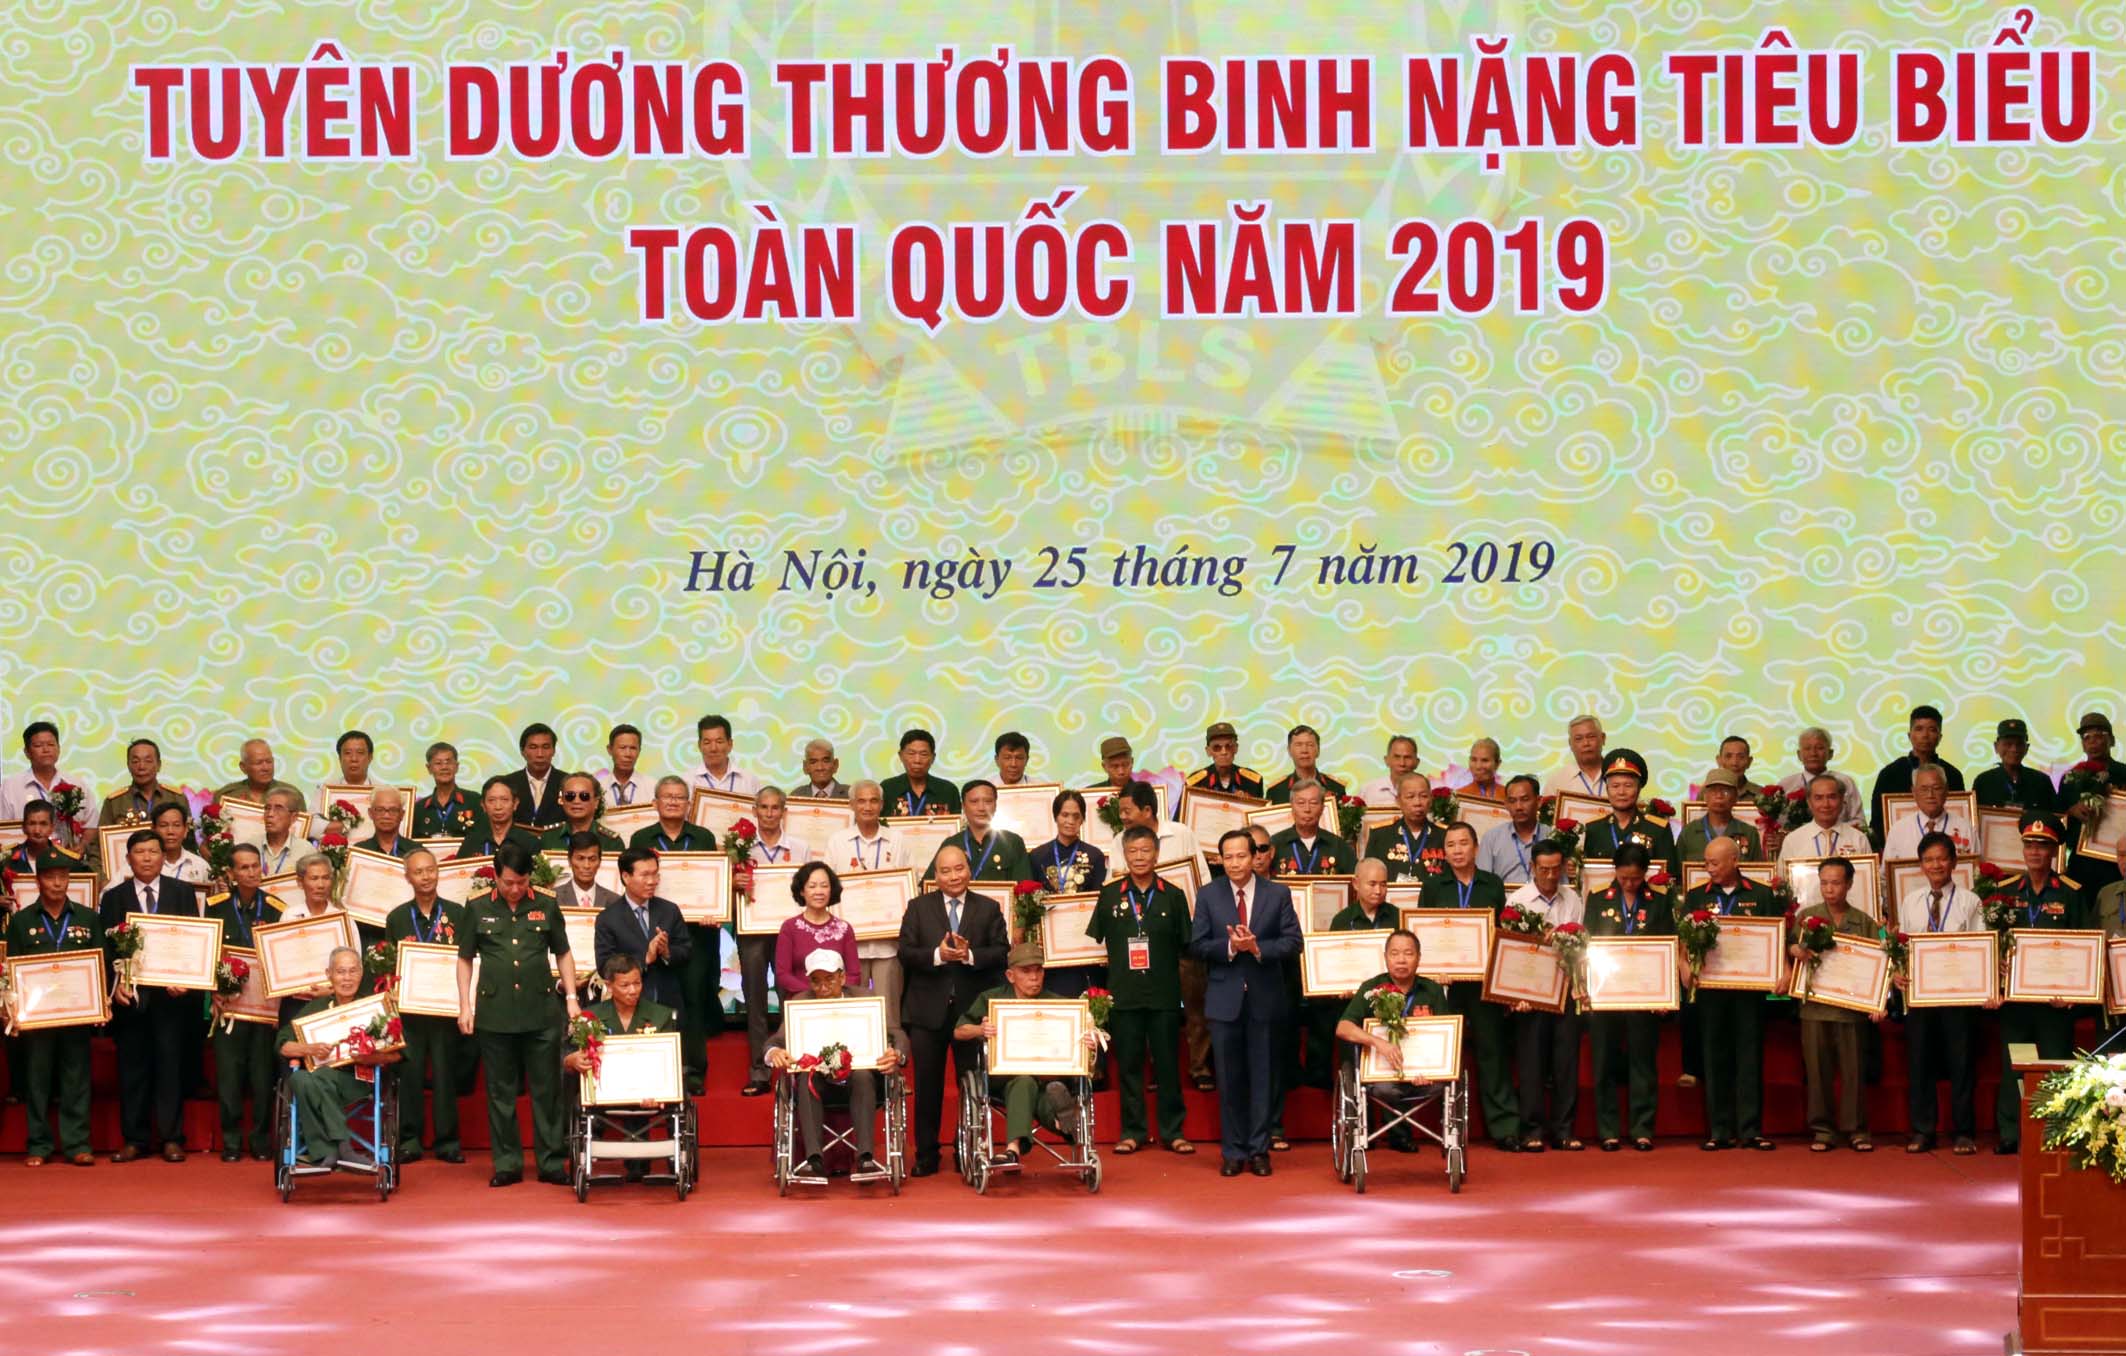 Thủ tướng Nguyễn Xuân Phúc tại Lễ tuyên dương thương binh nặng tiêu biểu toàn quốc năm 2019